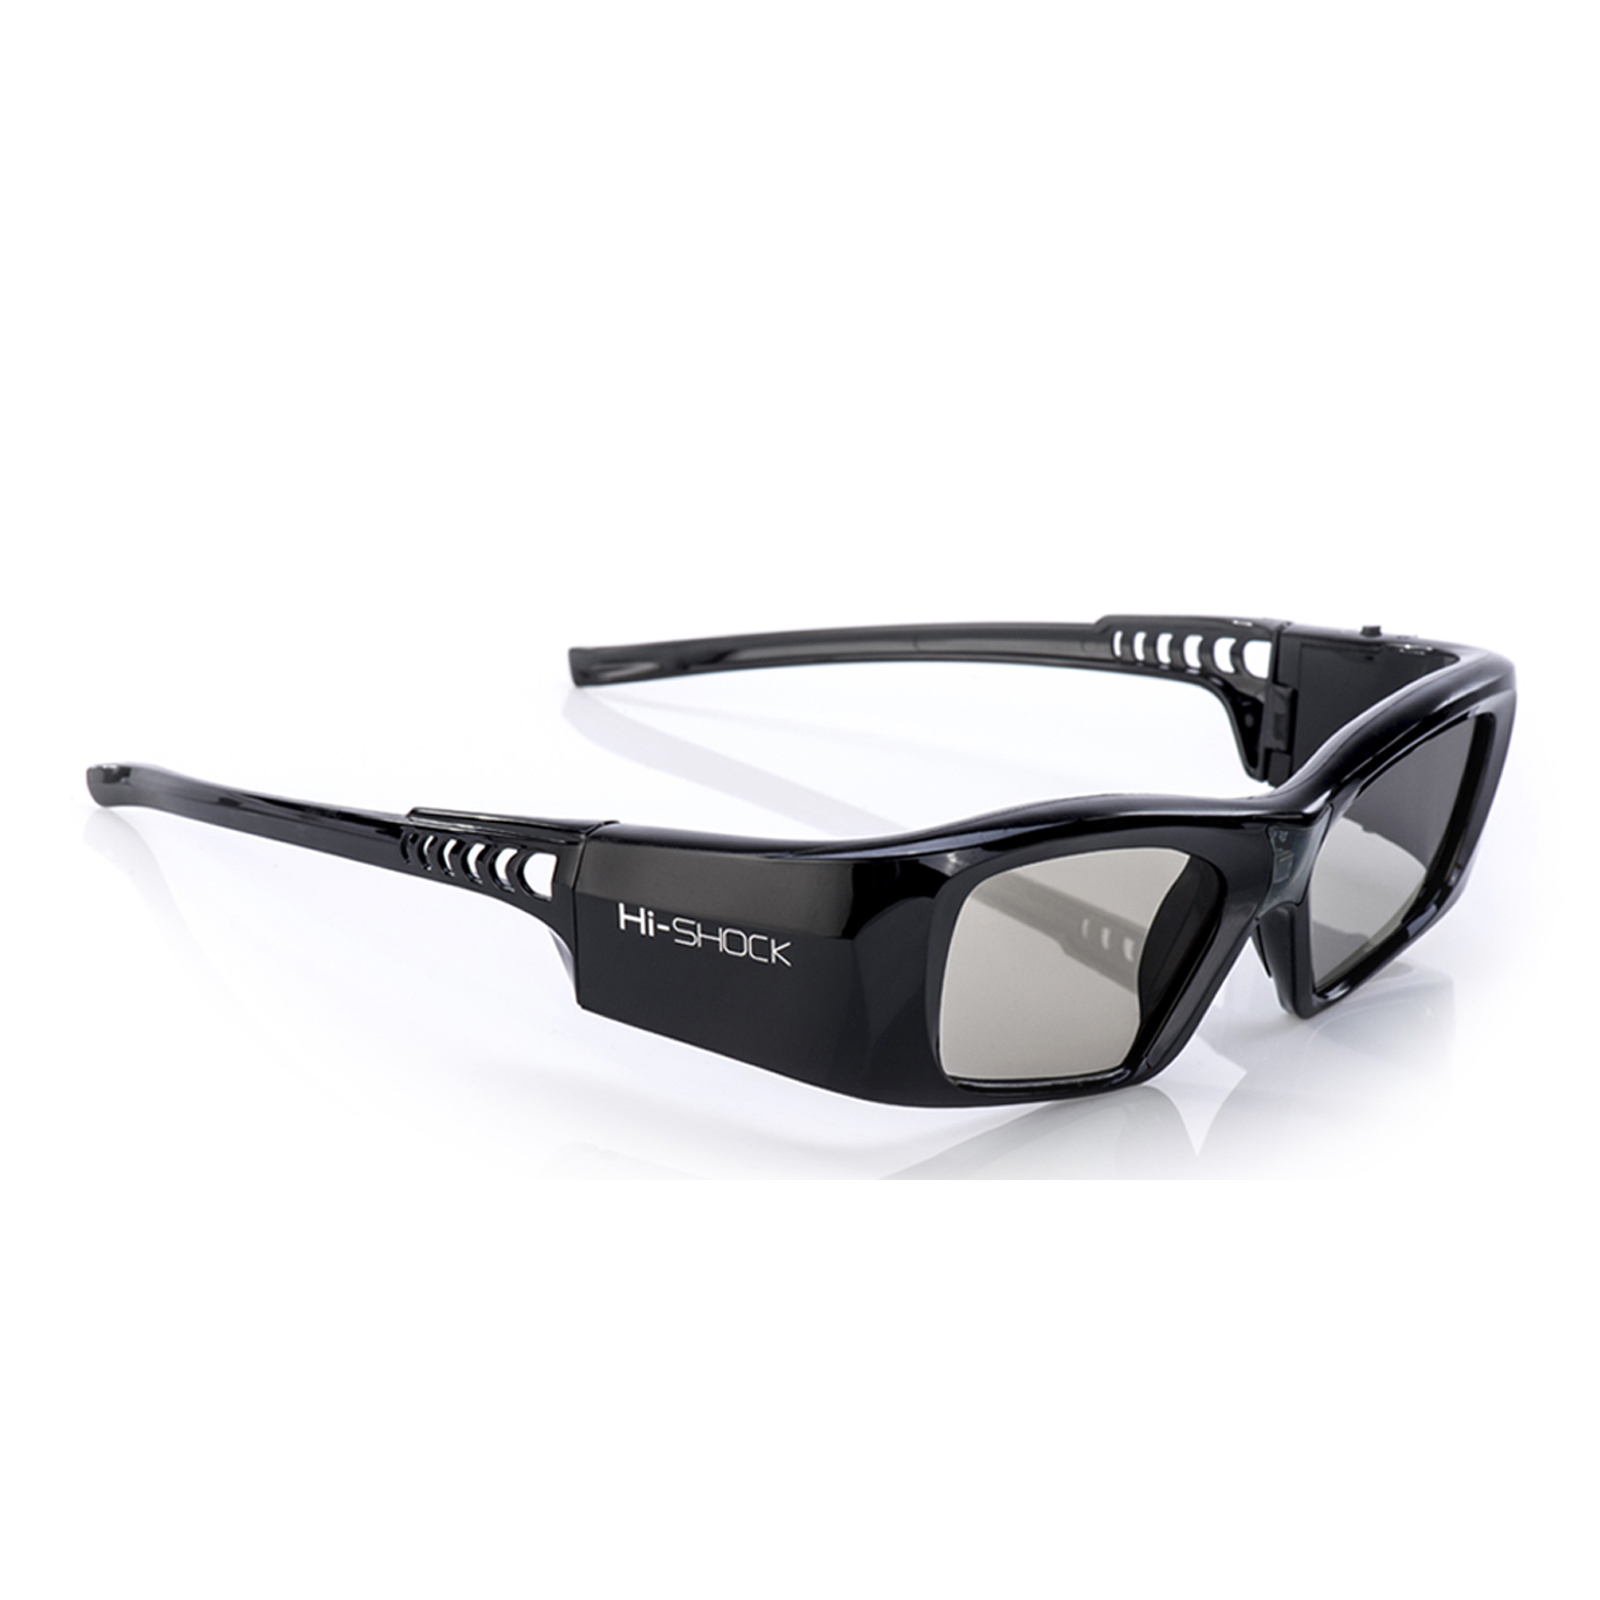 HI-SHOCK DLP für 3D - Link Diamond DLP 3D aktive schwarz Pro wiederaufladbar Black Brille Beamer 3D - Brille